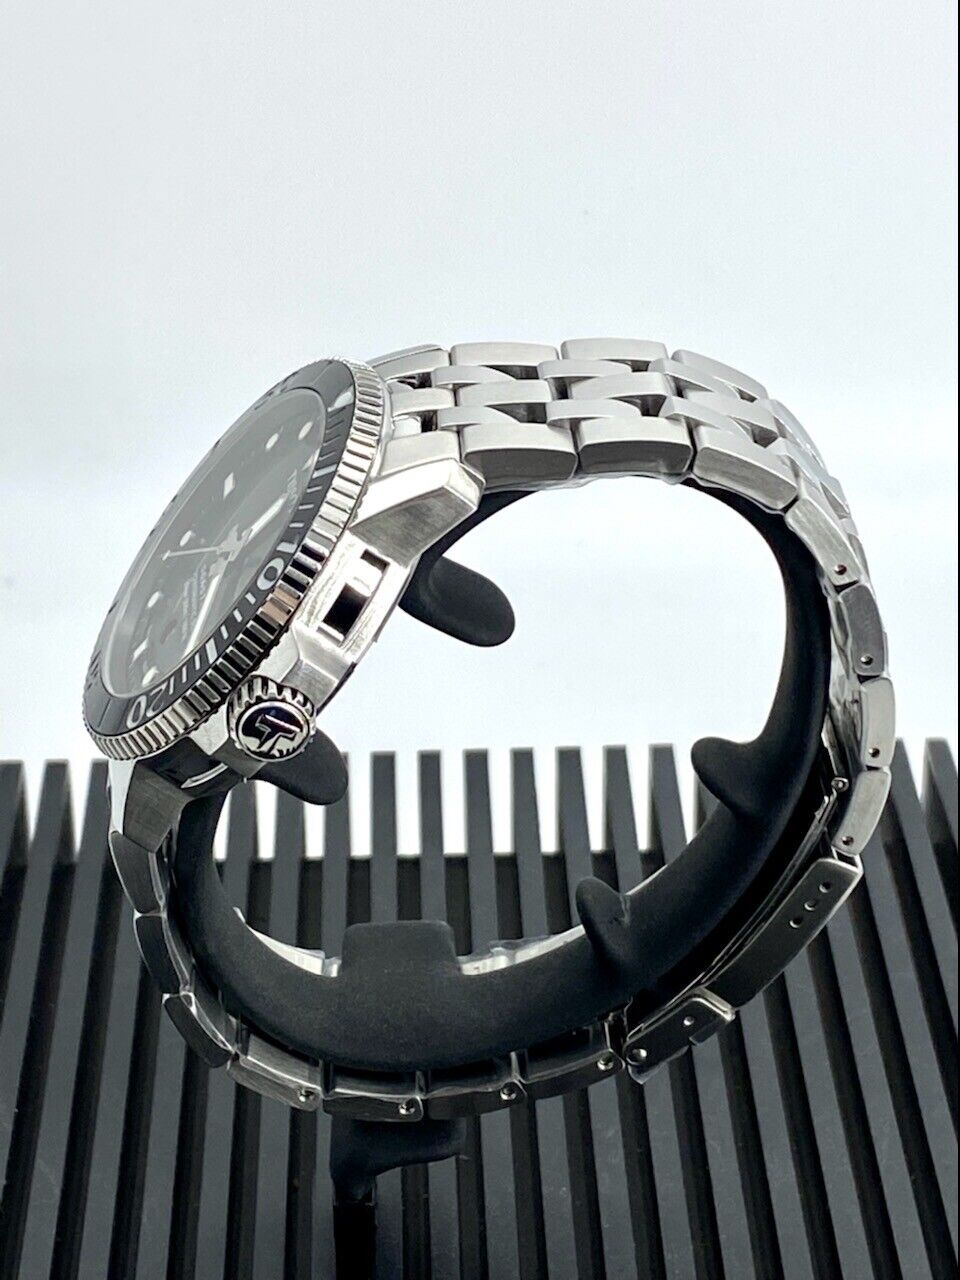 Tissot Seastar 1000 Powermatic80 Black Dial Men's Watch T1204071105100